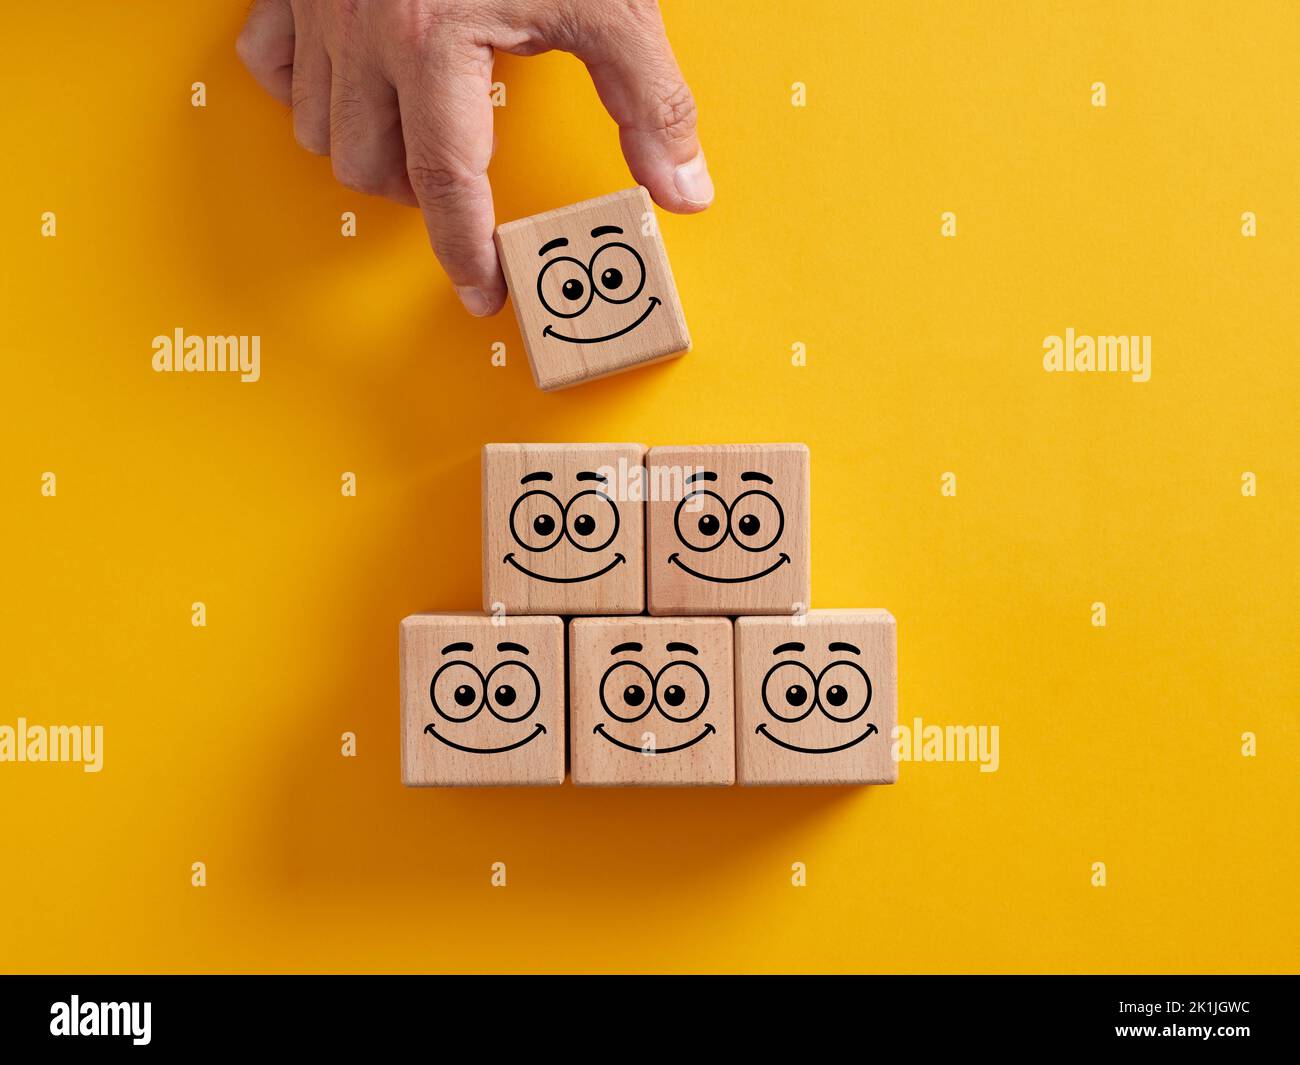 Mettere a mano cubi di legno con emoticon sorridenti viso disposti in scala piramidale. Atteggiamento positivo, soddisfazione del cliente, gestione emotiva o. Foto Stock